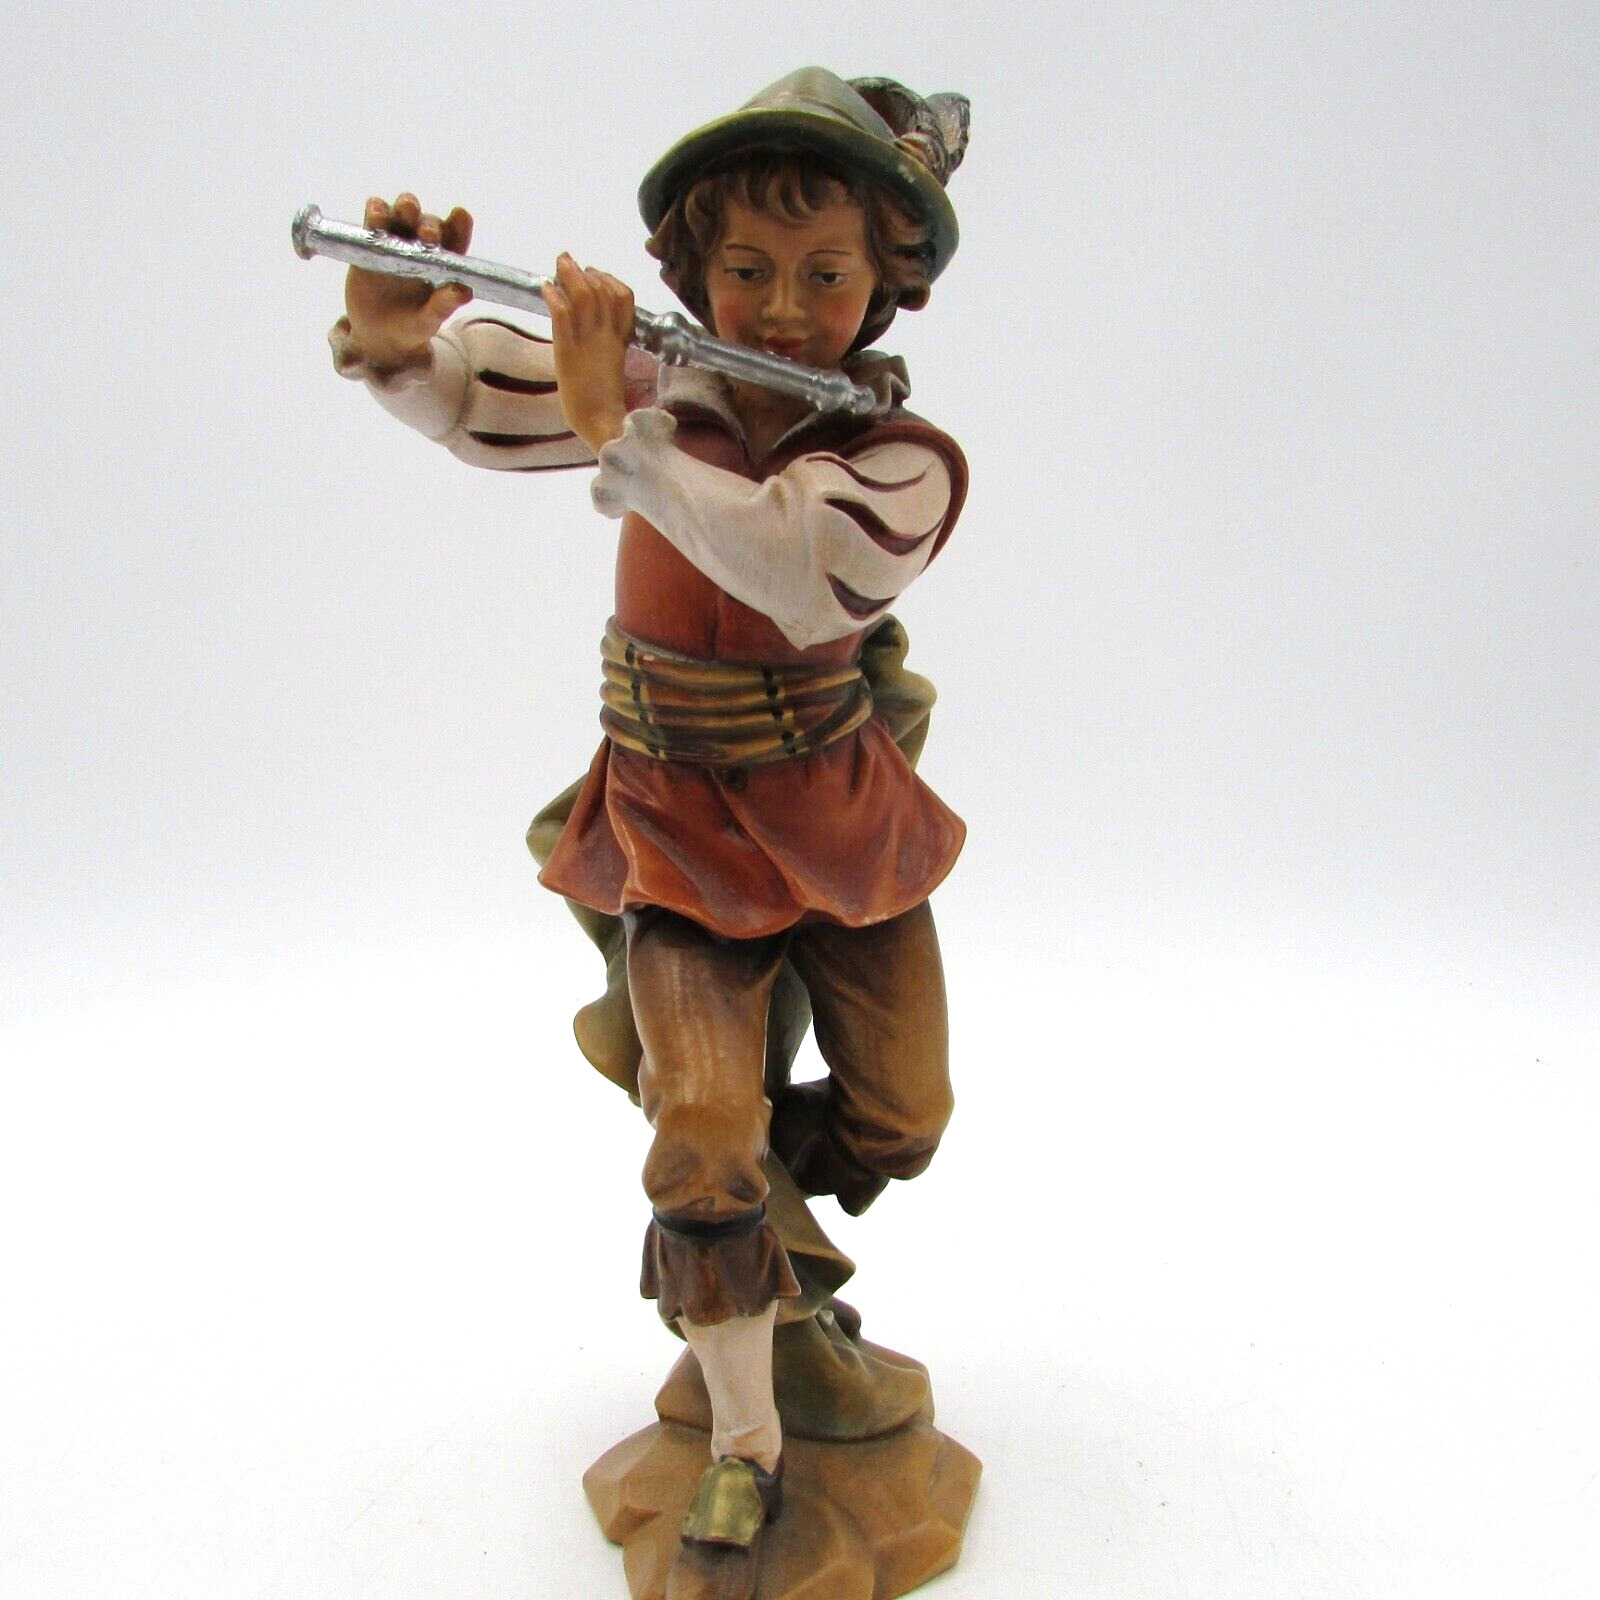 Anton Fischer German Oberammergau Hand Carved Wood Vtg Figurine Playing Flute